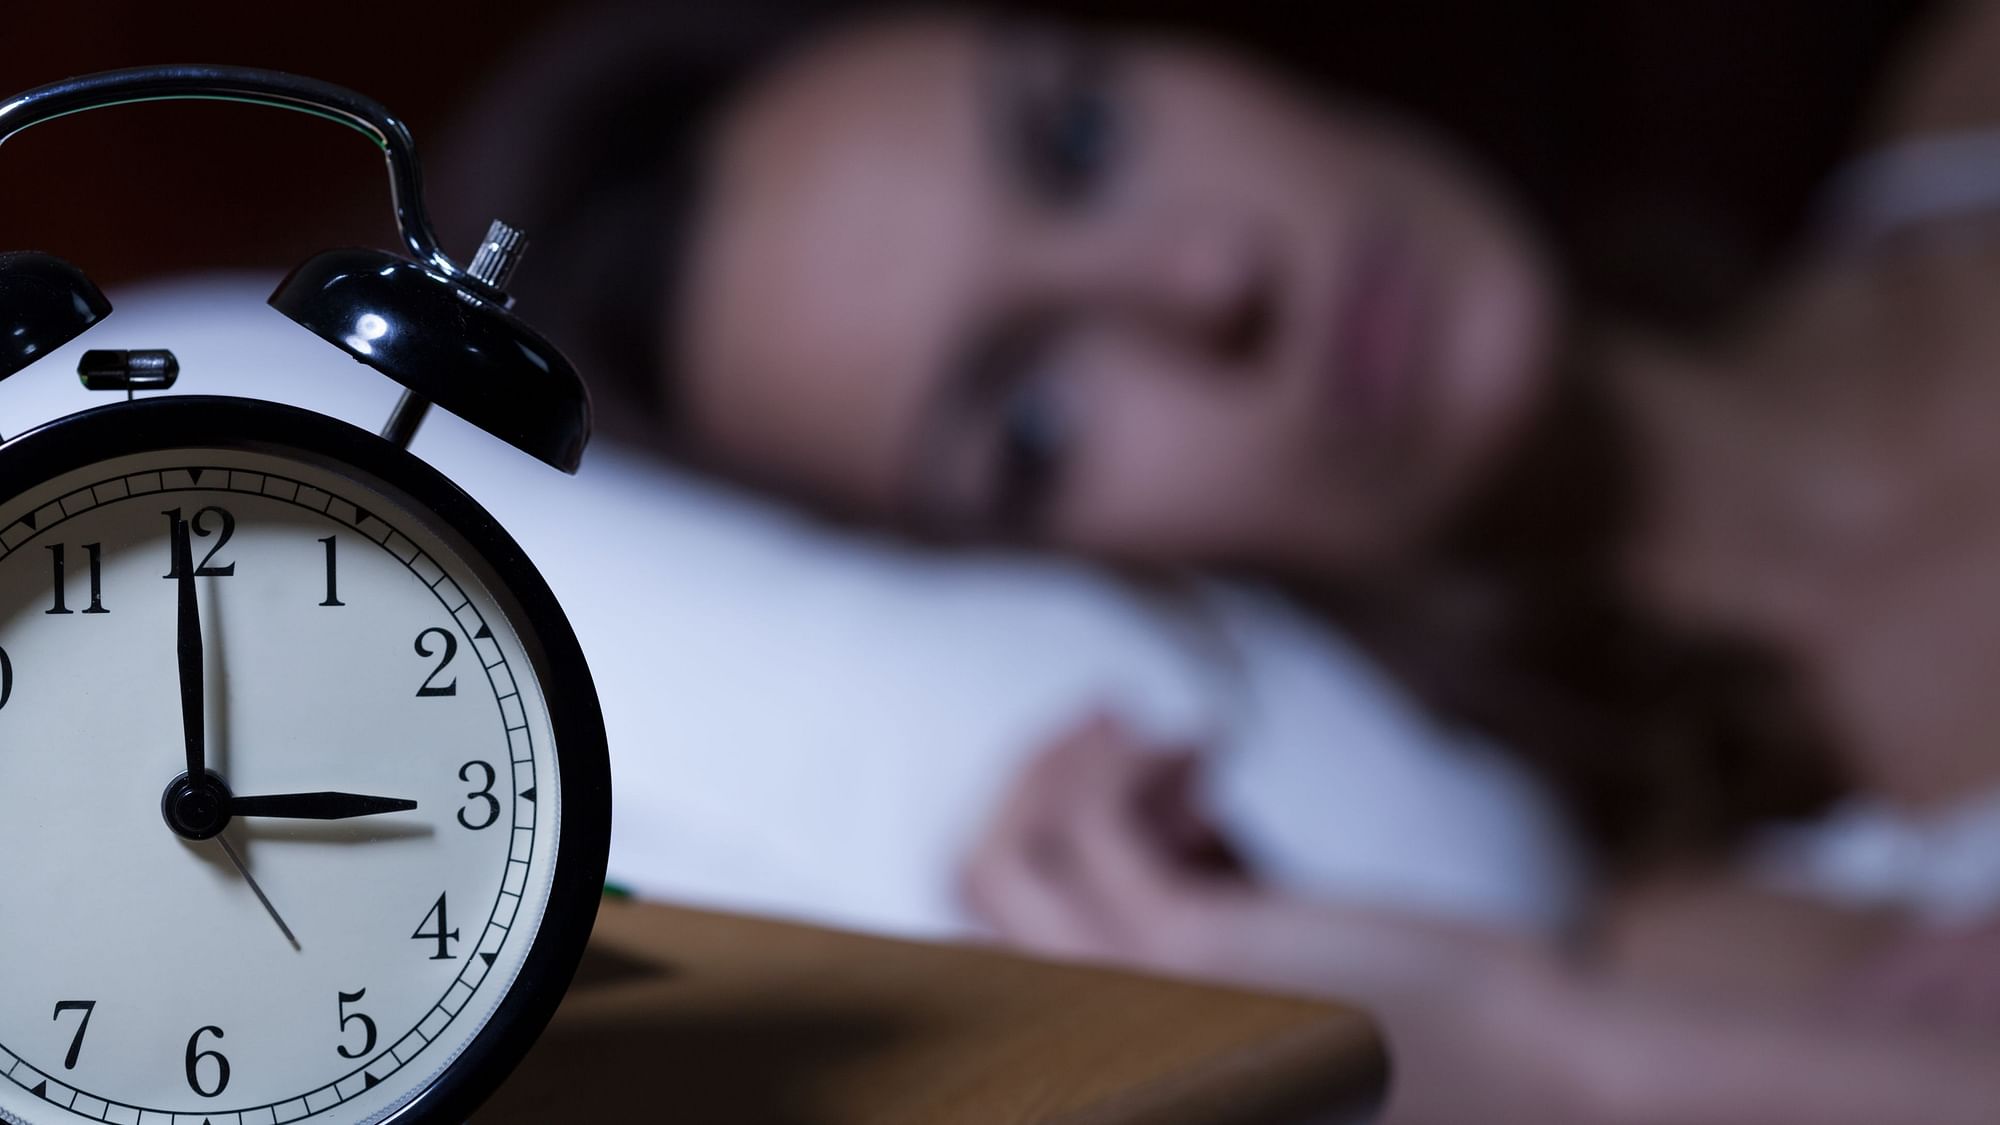 हाल के अध्ययनों के अनुसार 60% लोगों ने कम नींद की शिकायत की है